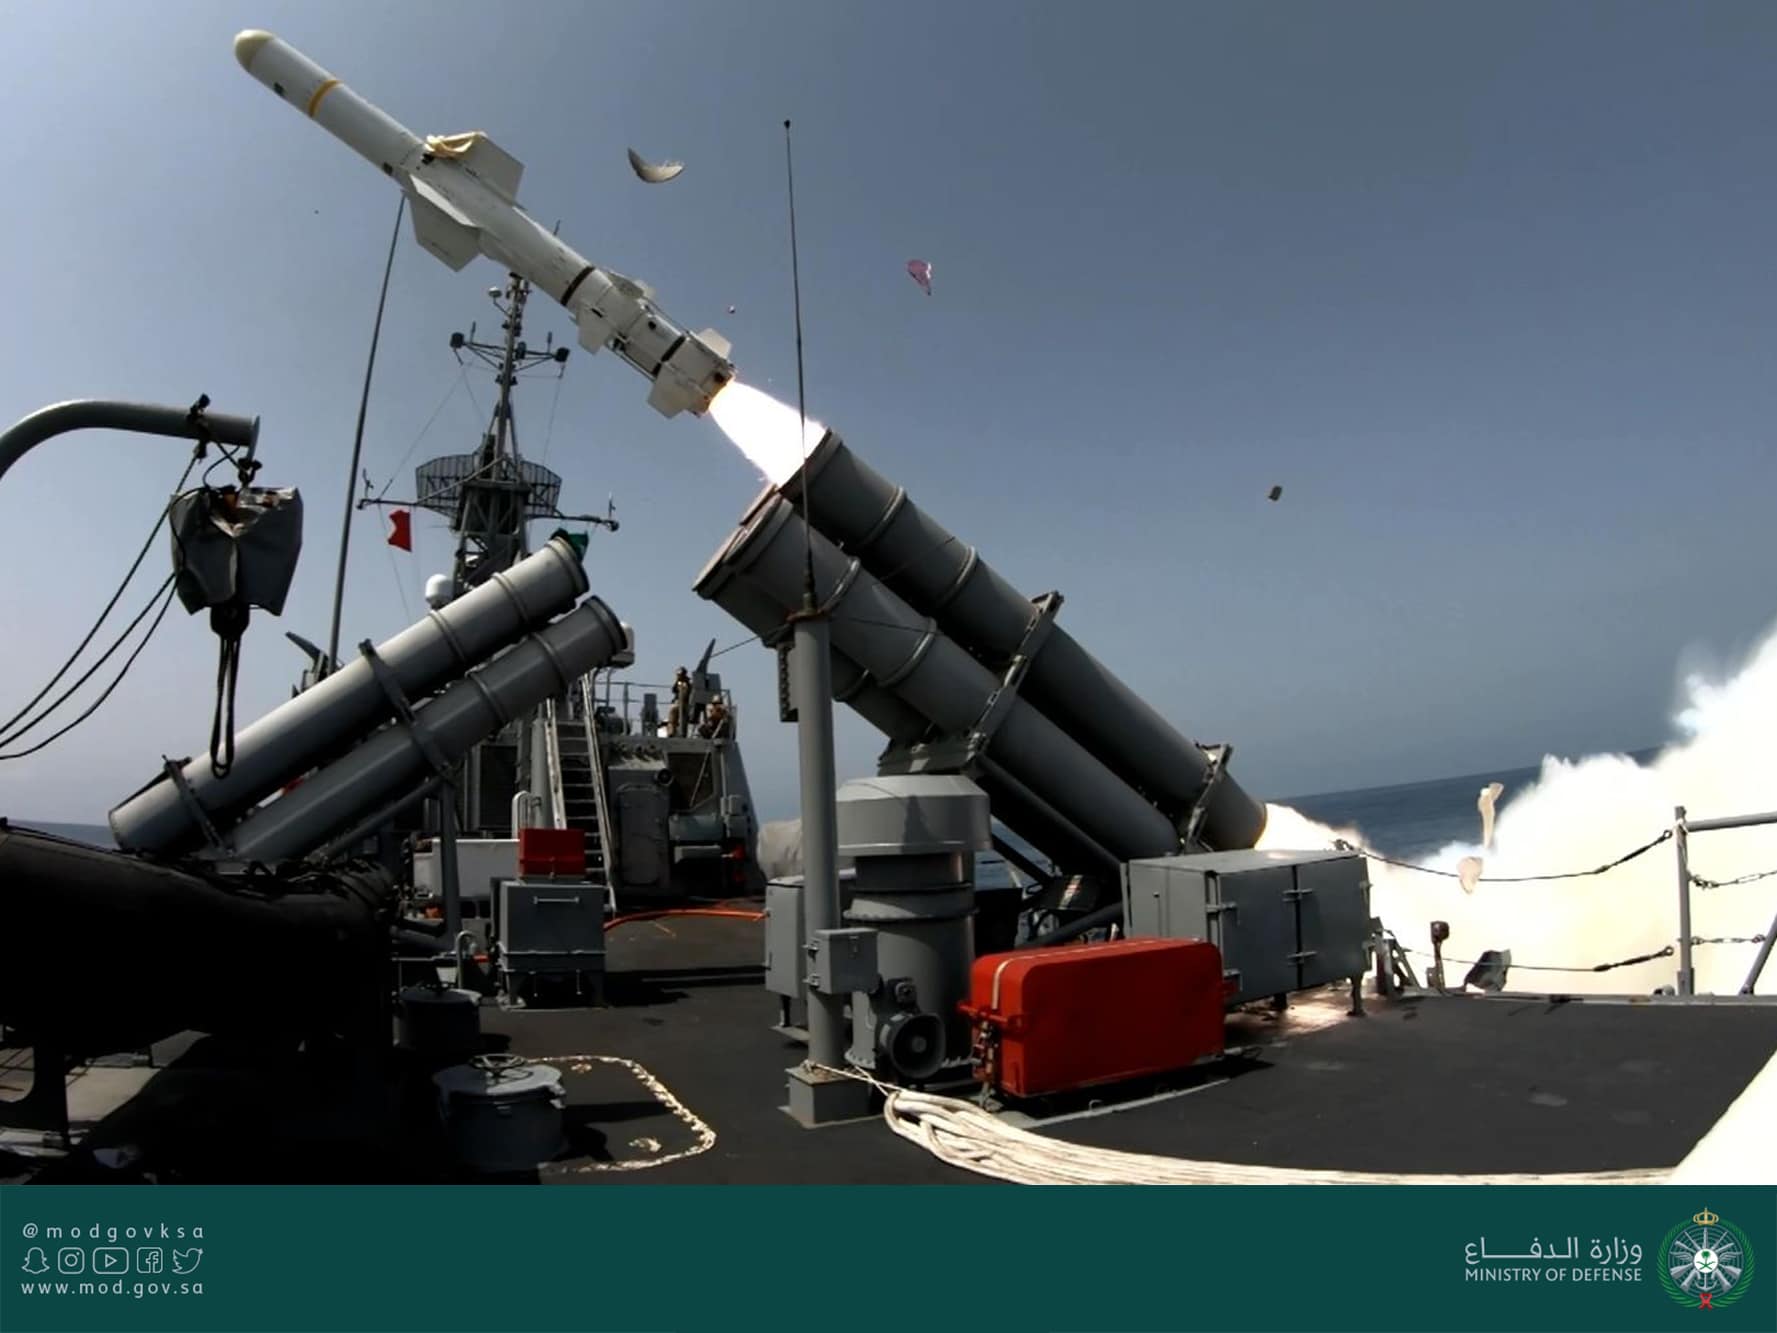 شاهد القوات البحرية الملكية السعودية تنفذ رماية إحترافيه بالصواريخ